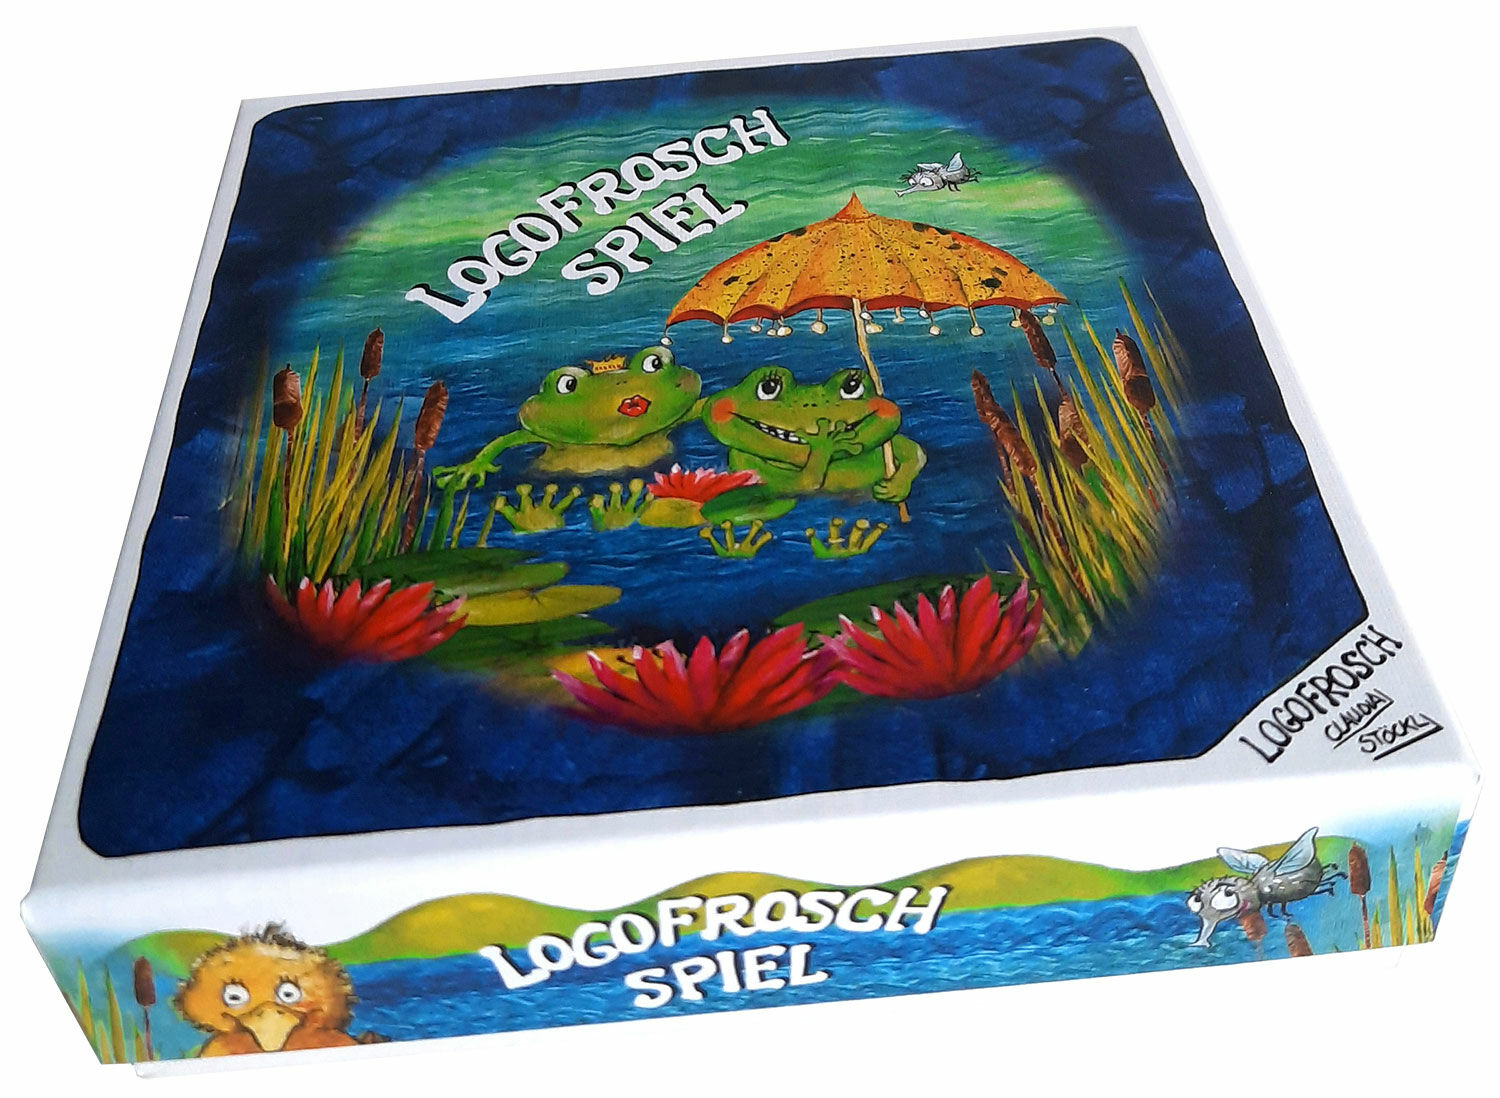 Karten-/Brettspiel "Logofrosch-Spiel" (für Kinder ab 4 Jahren) von Logofrosch